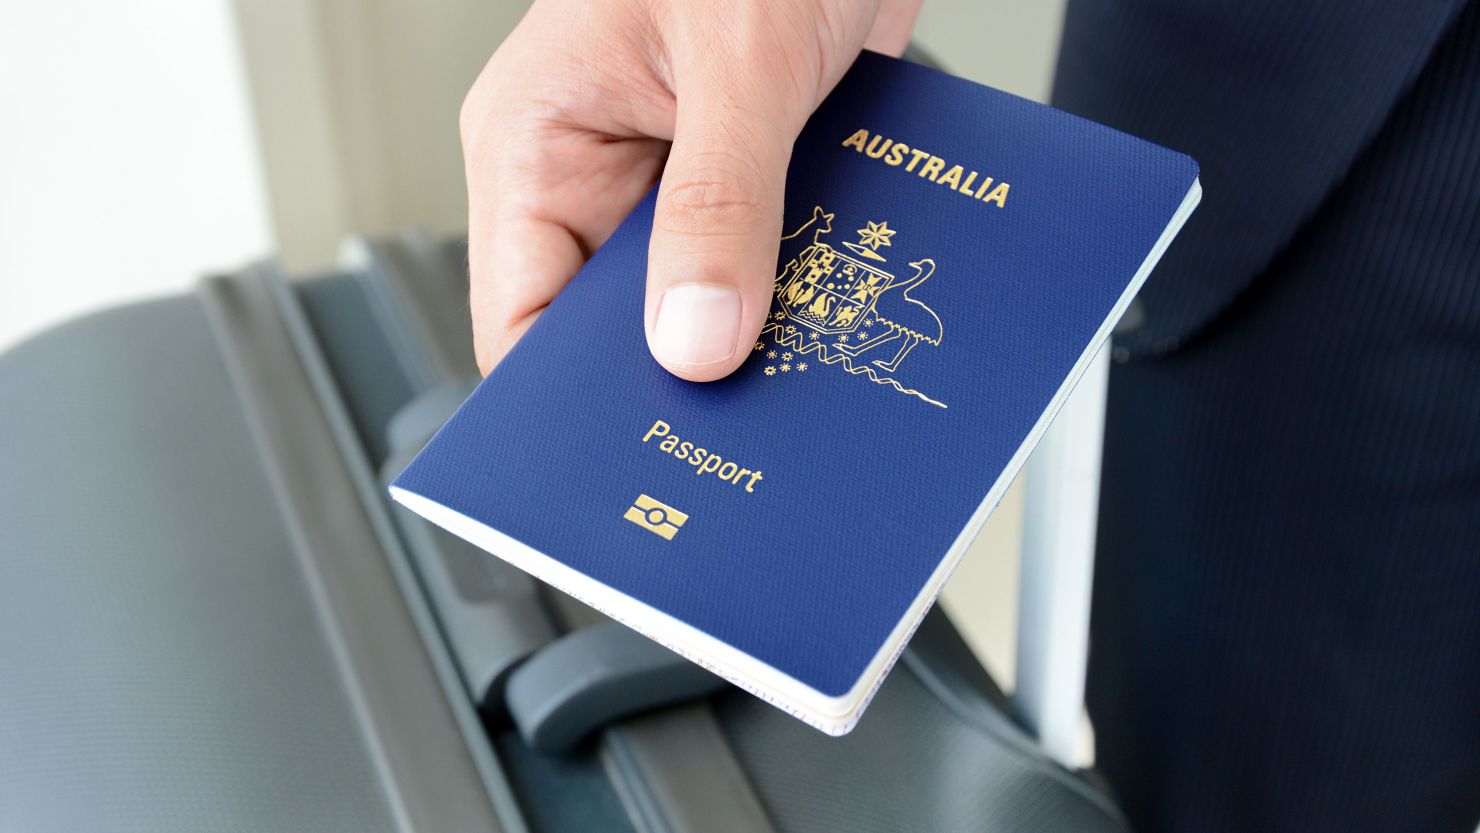 A traveler carries an Australian passport